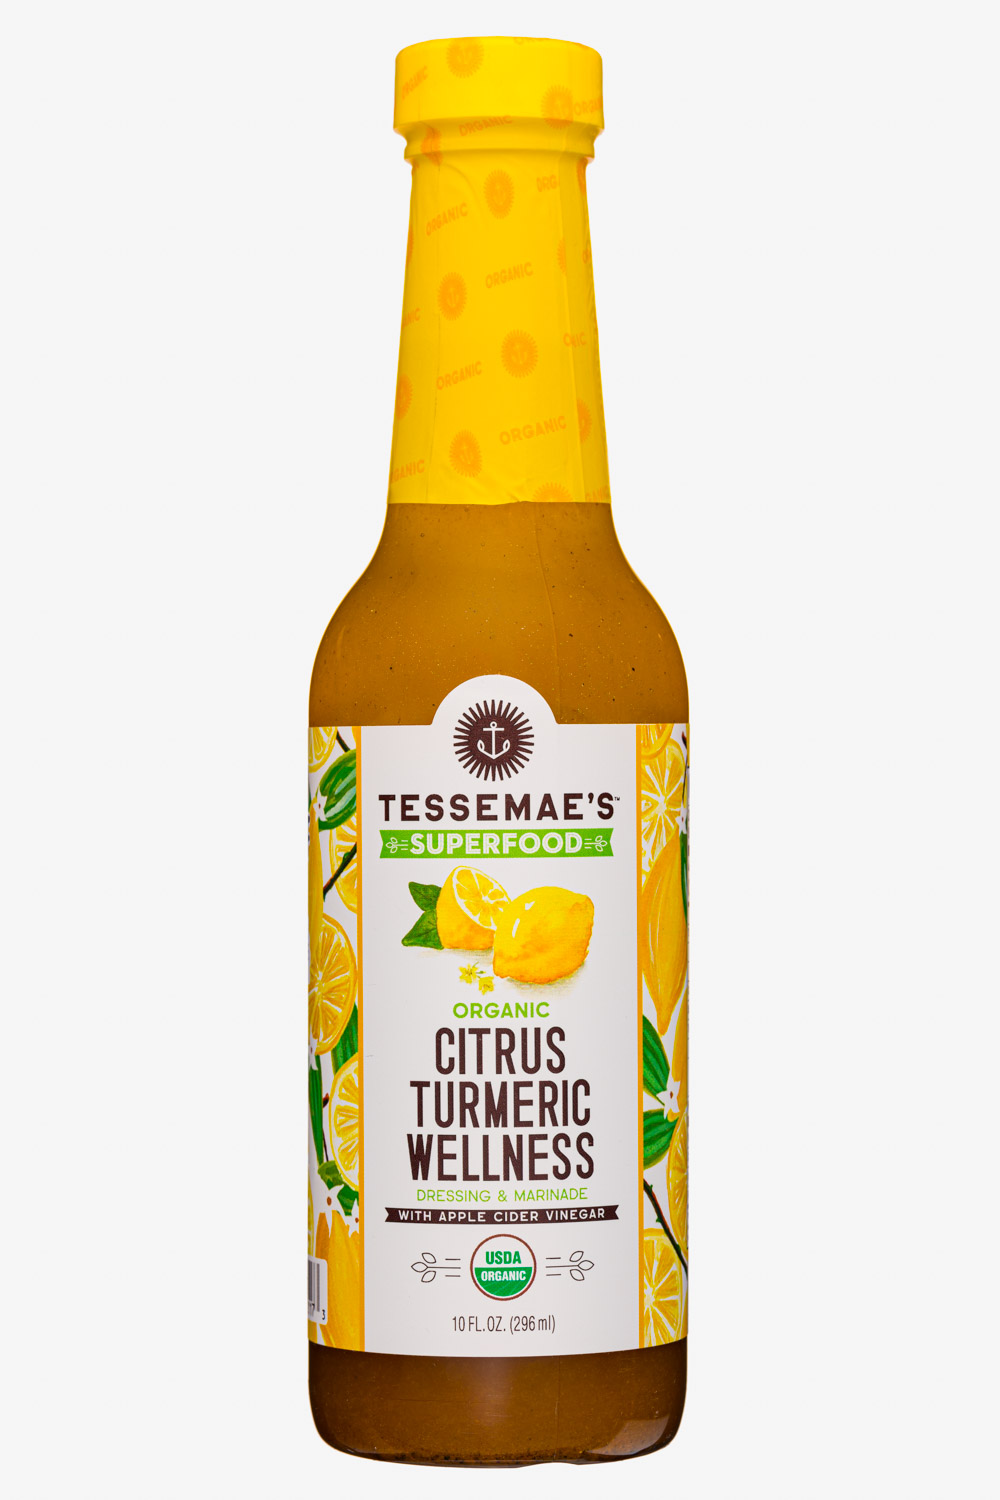 Citrus Turmeric Wellness 2020